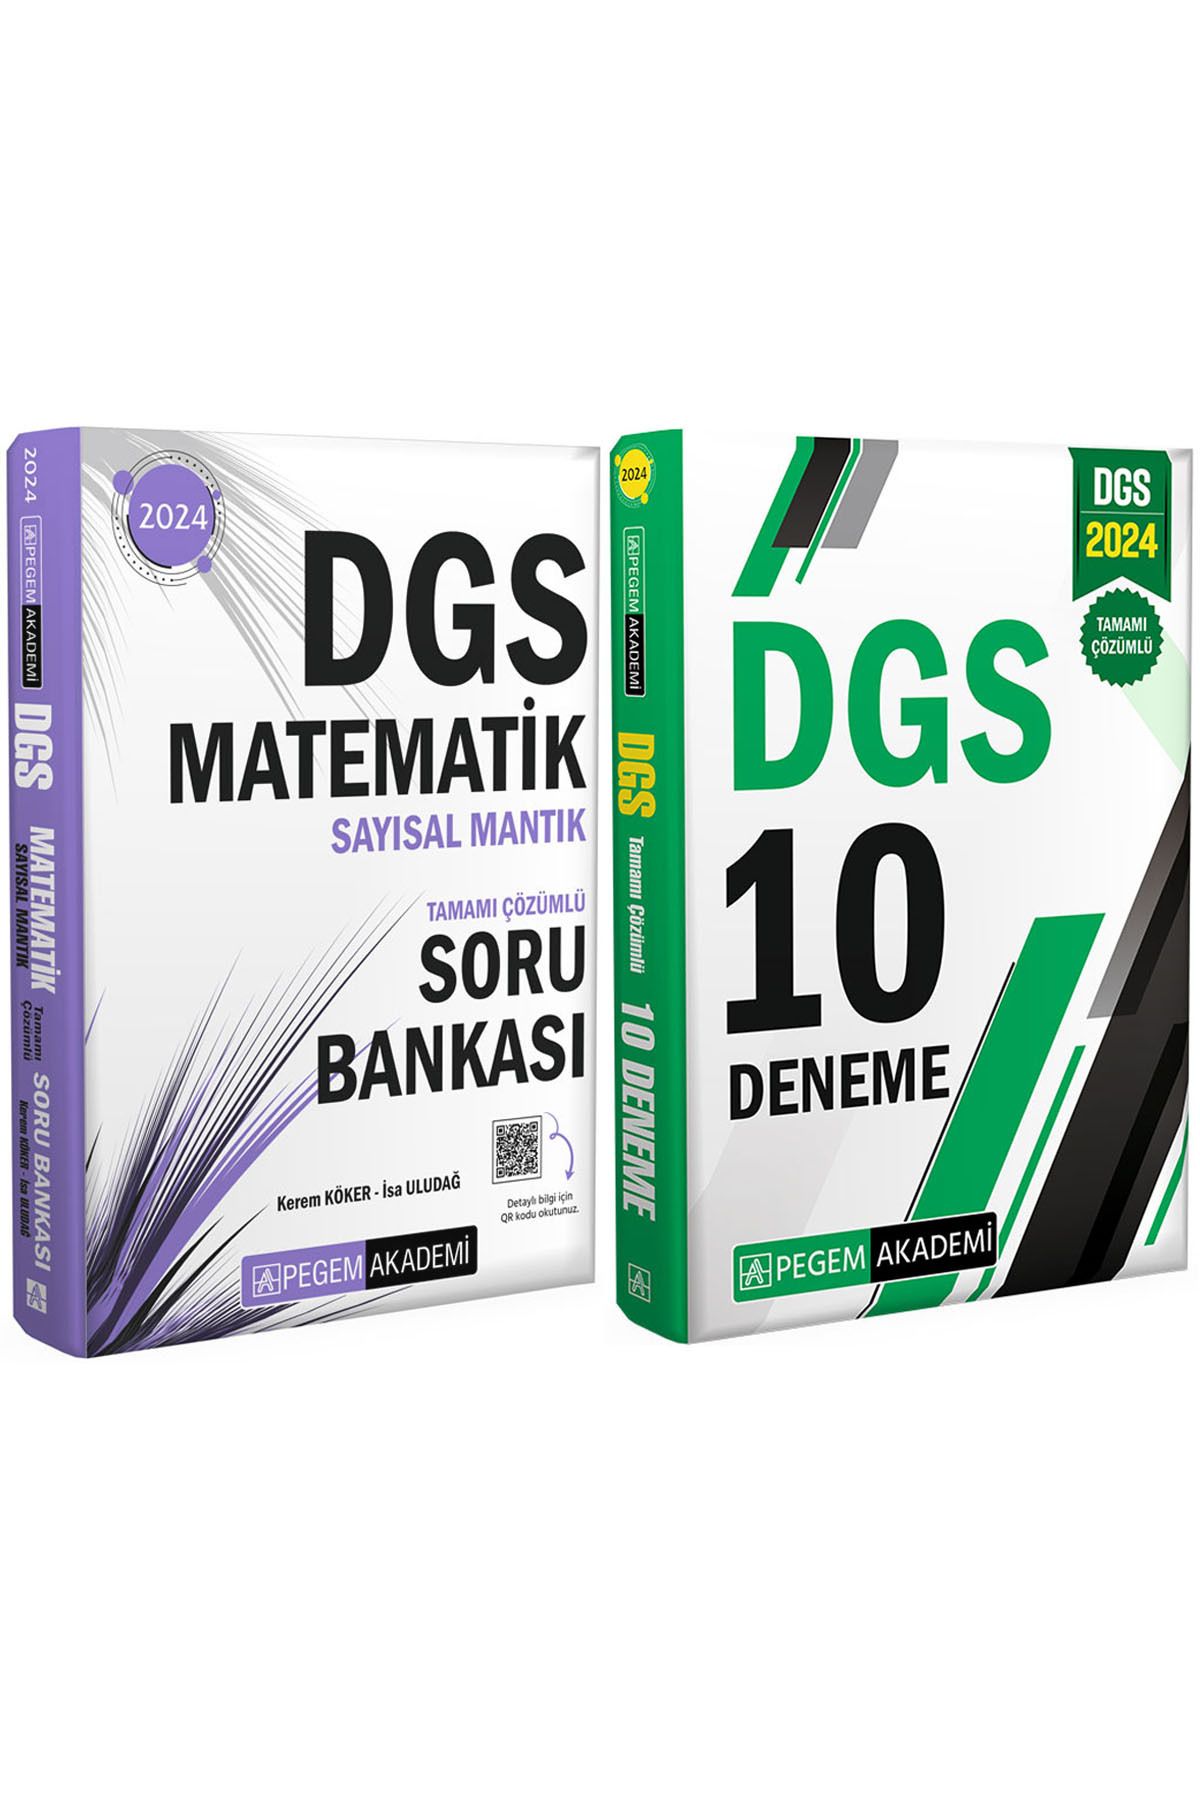 Pegem Akademi Yayıncılık DGS 2024 Tamamı Çözümlü 10 Deneme-Matematik Sayısal Mantık Tamamı Çözümlü Soru Bankası